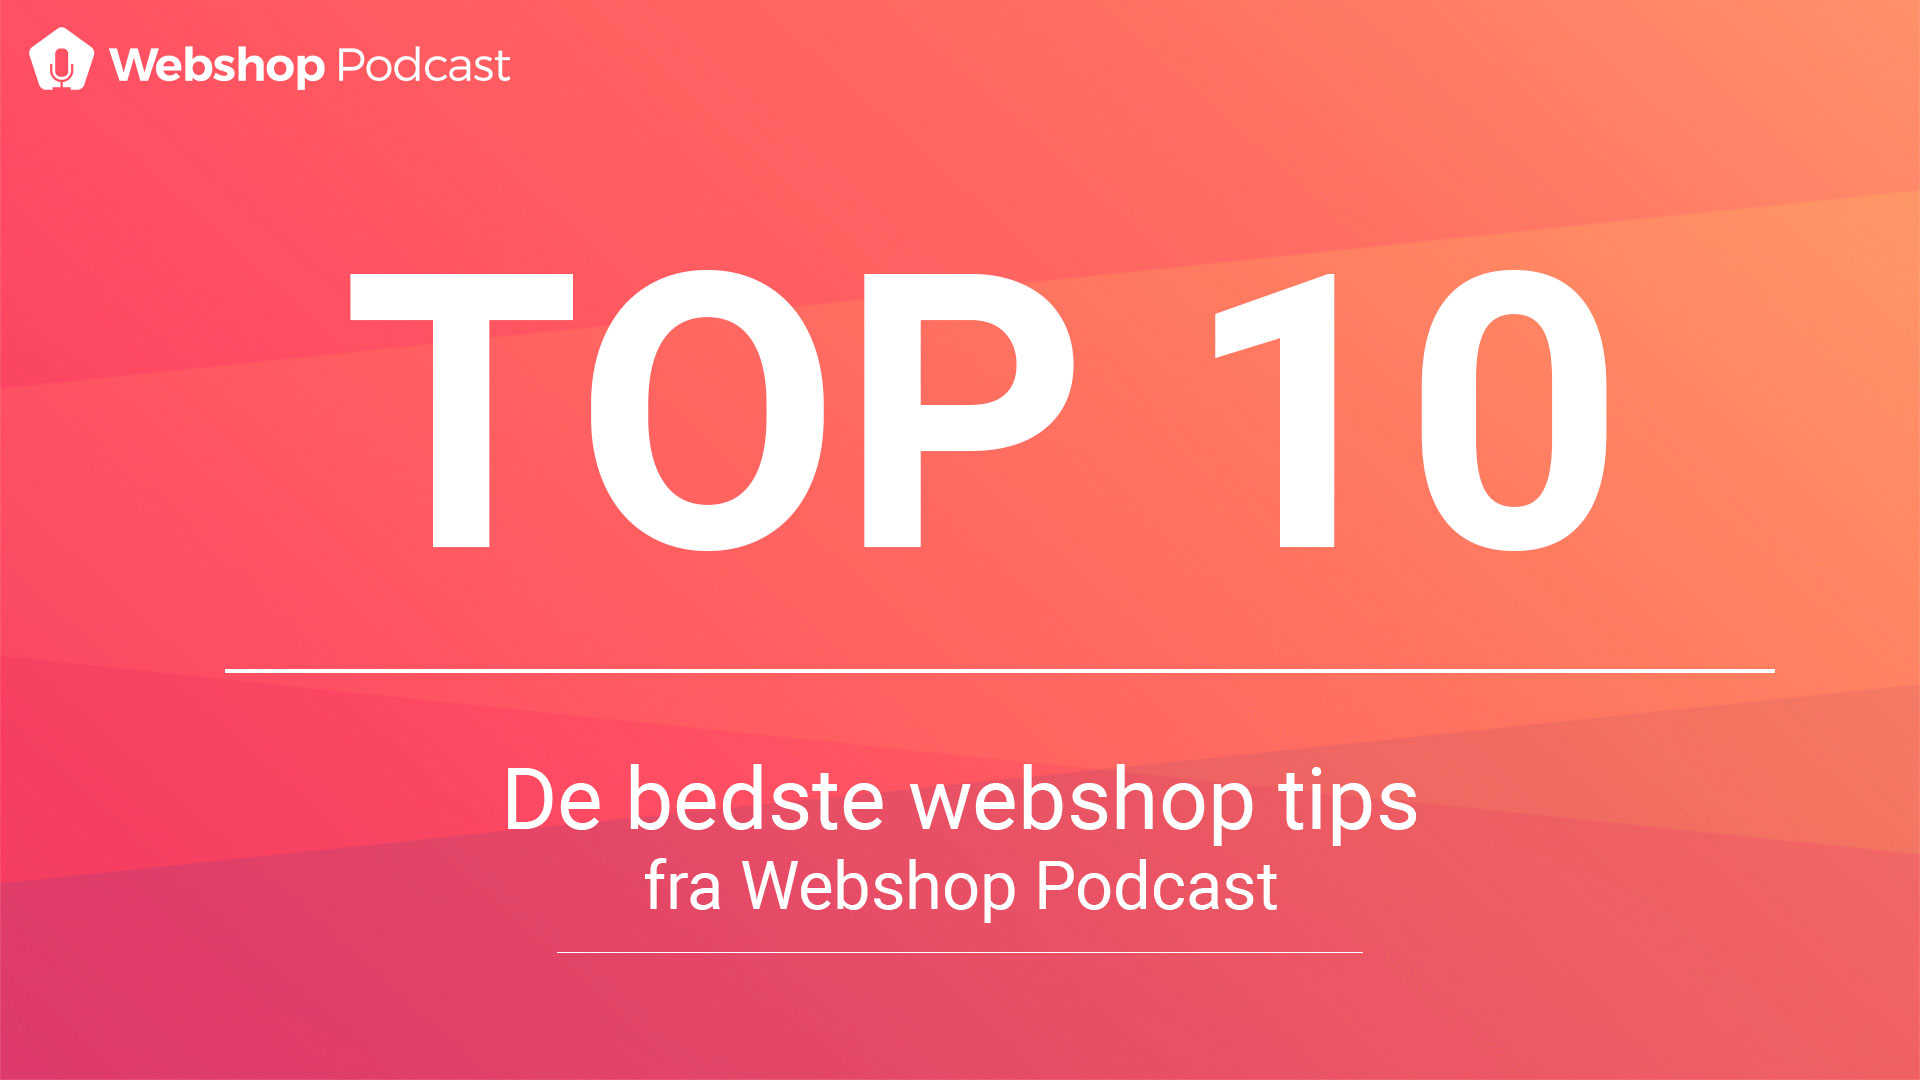 TOP 10: DE BEDSTE WEBSHOP TIPS